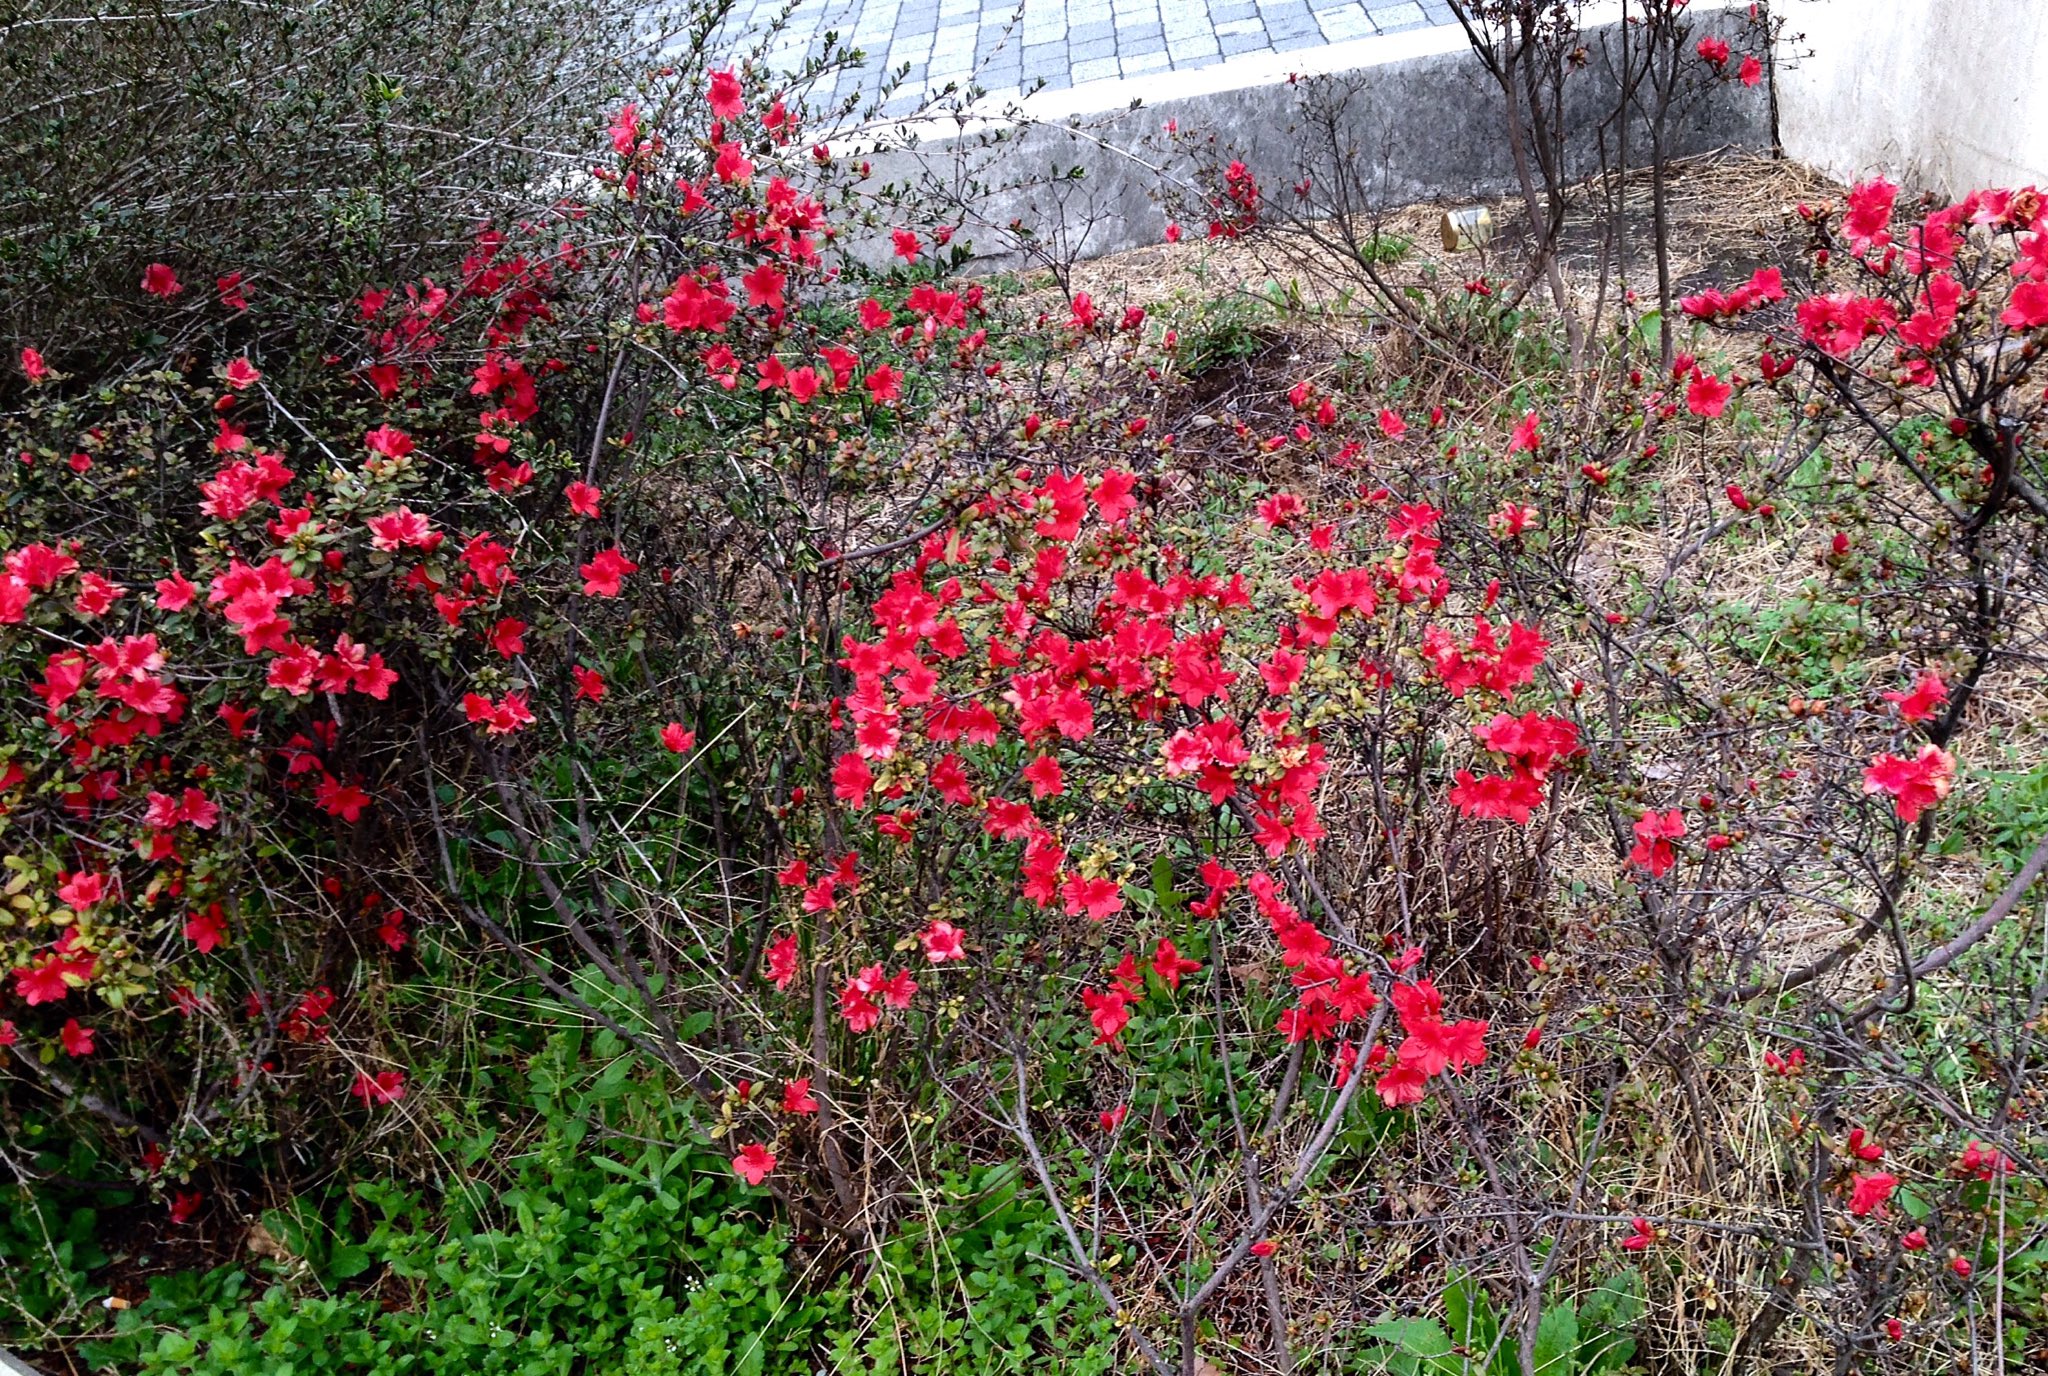 浅見 Lefty Blue おやおや これは早い 新宿駅東口線路近くの植え込みに赤い花 種類はわからないが ツツジの仲間 かなり花が小さいので いわゆる園芸品種ではない 野山に咲く種類なのではと想像するのだが どうだろう ツツジ 躑躅 Azalea